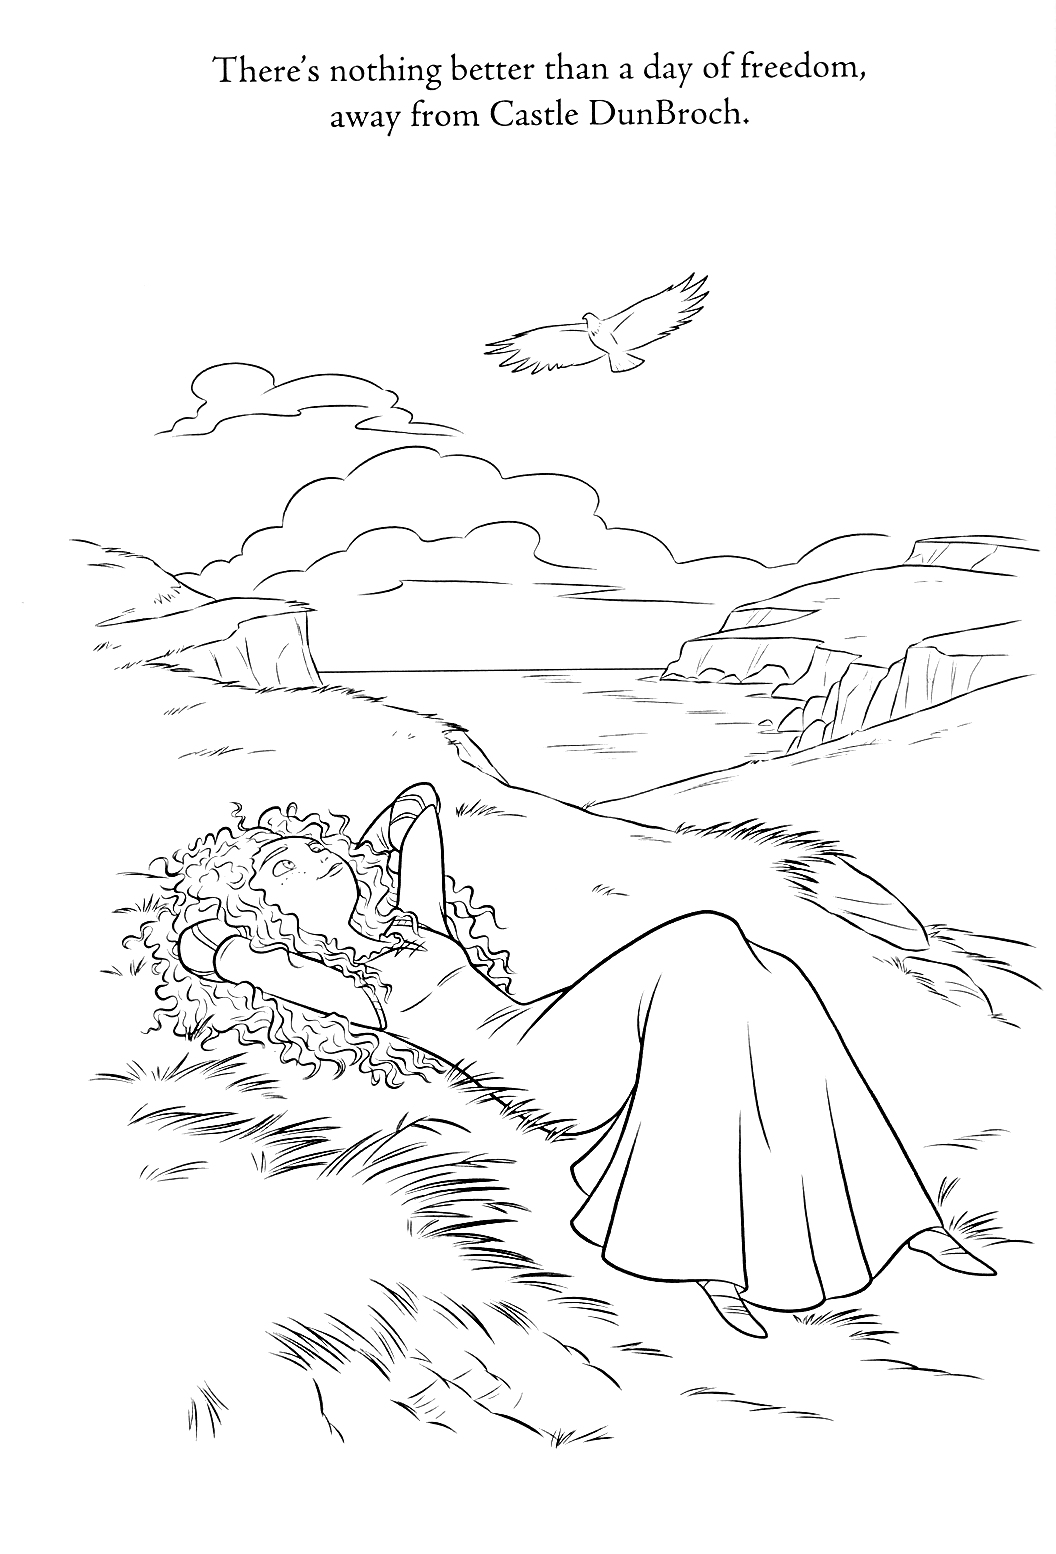 Девушка с кудрявыми волосами в длинном платье, лежащая на траве на фоне холмов и парящего сокола